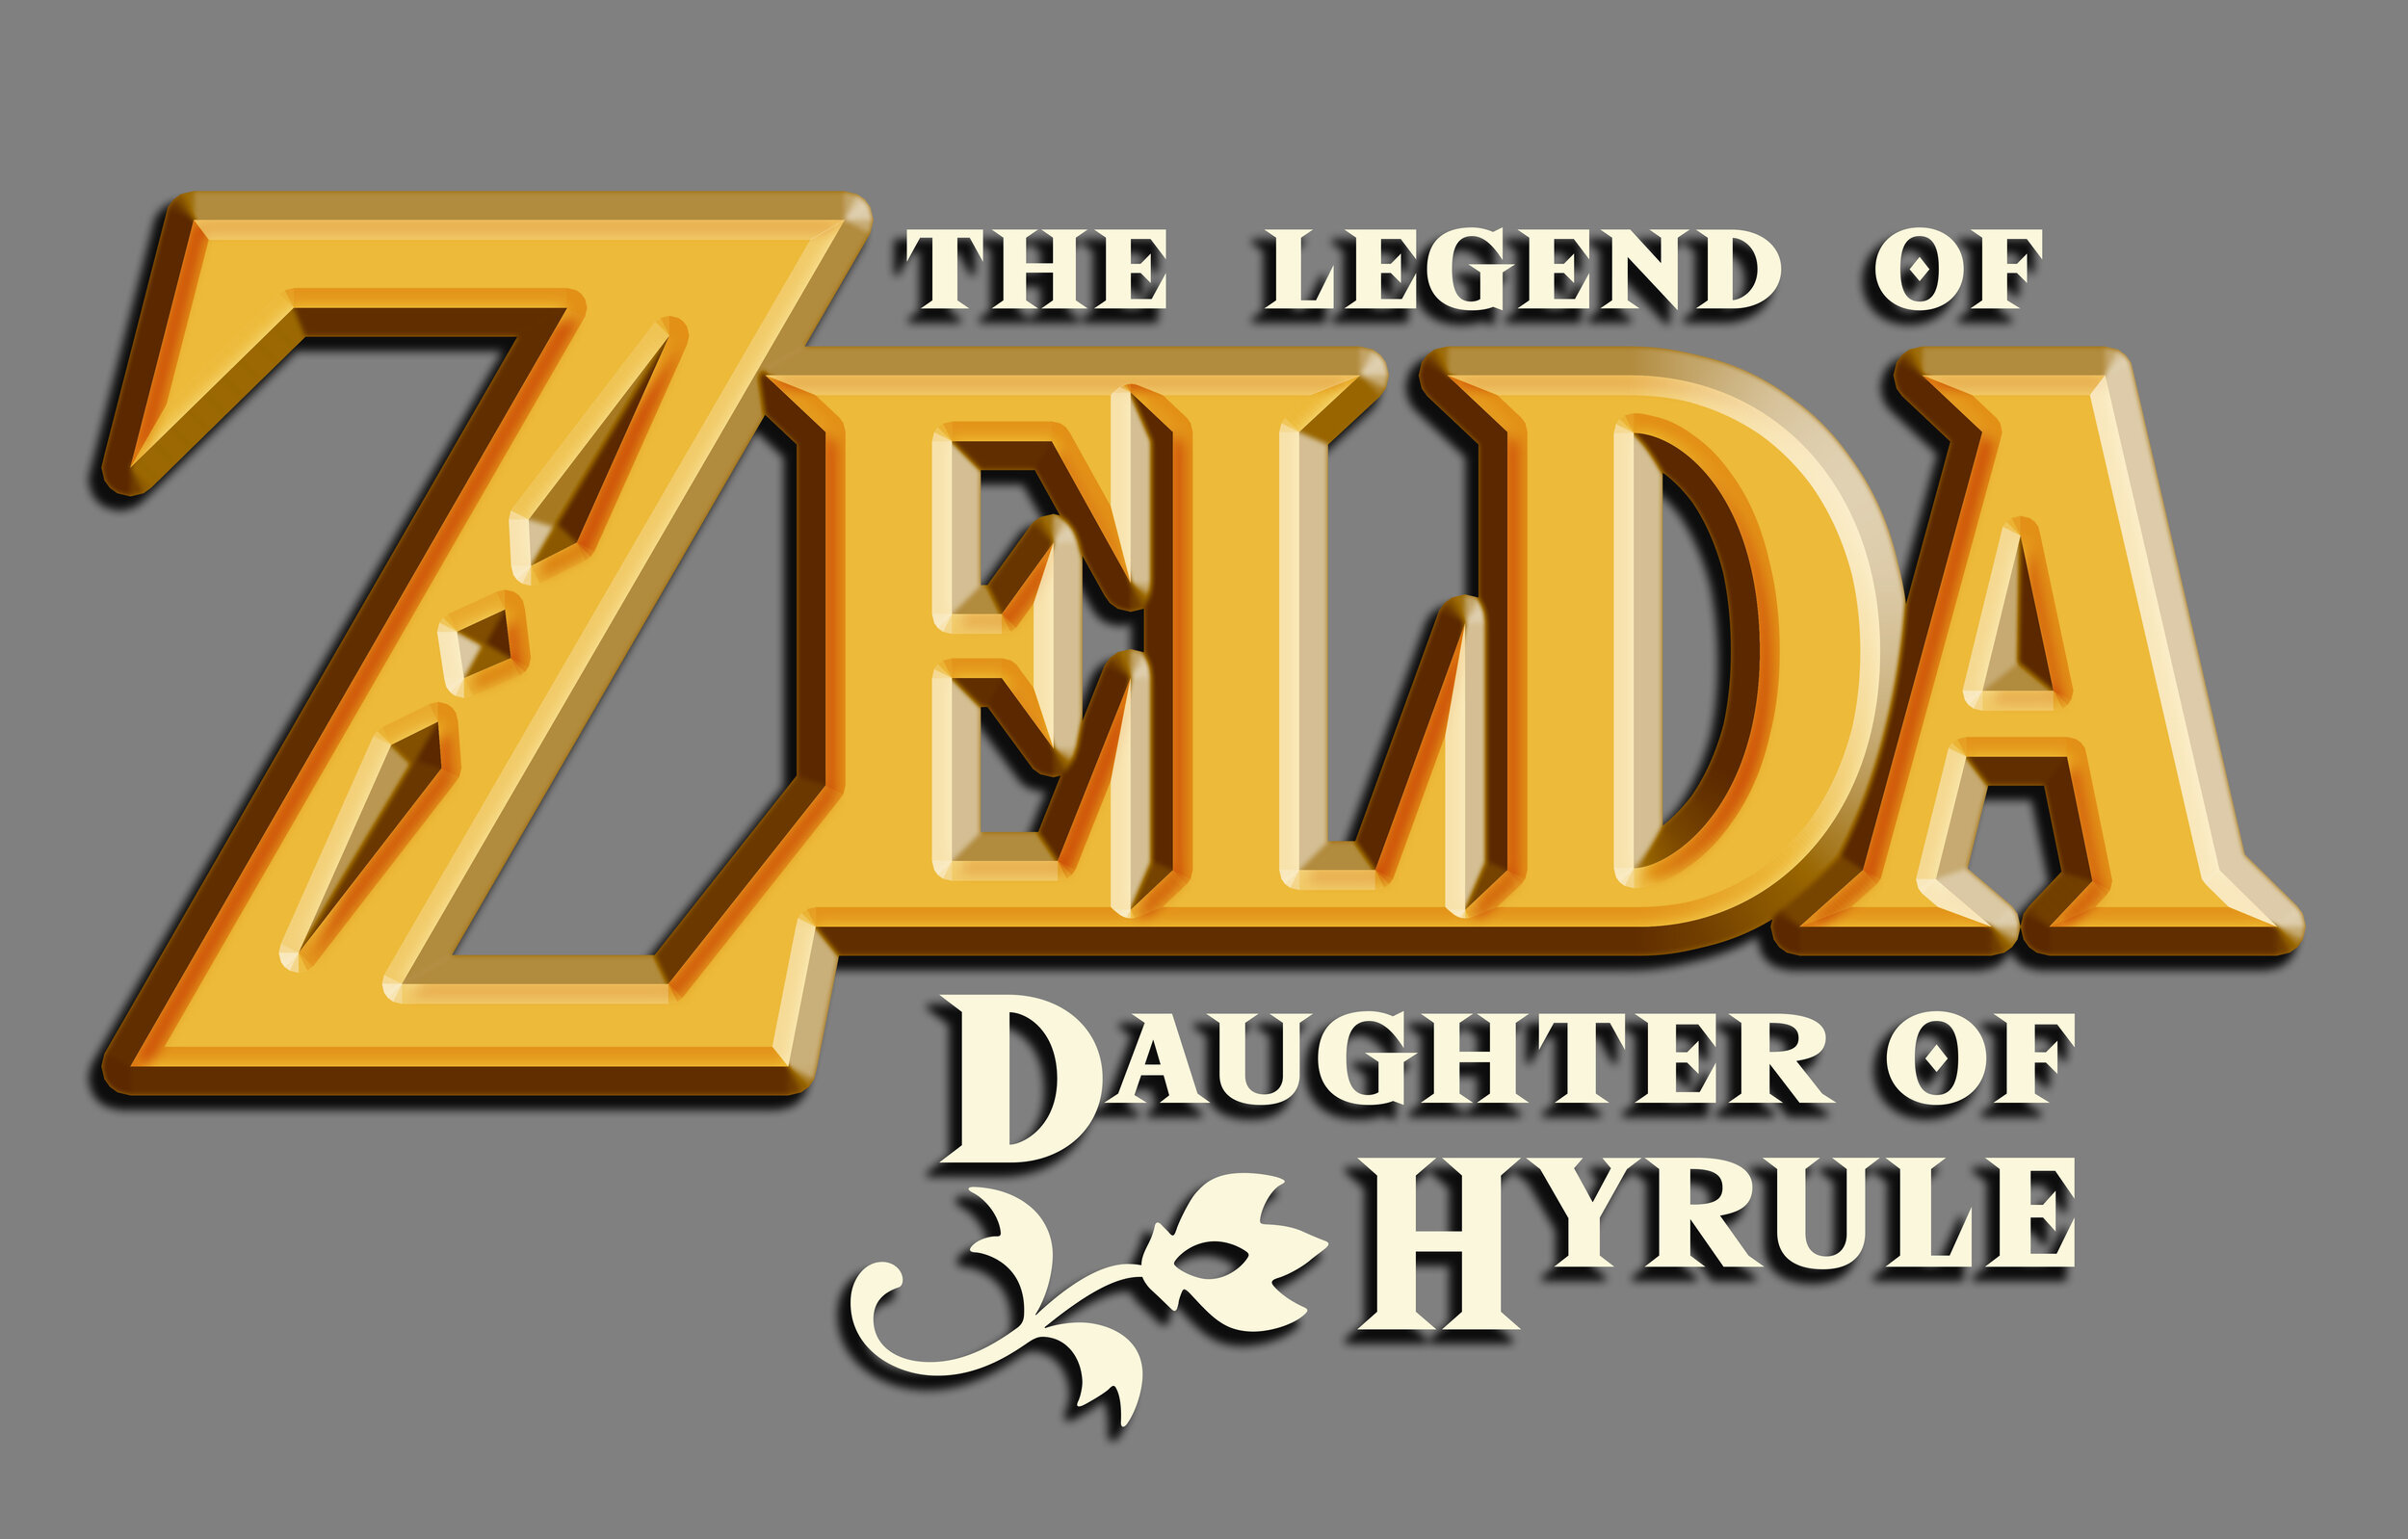 Legend-of-Zelda-Daughter-of-Hyrule-Logo-2020.jpeg.jpg